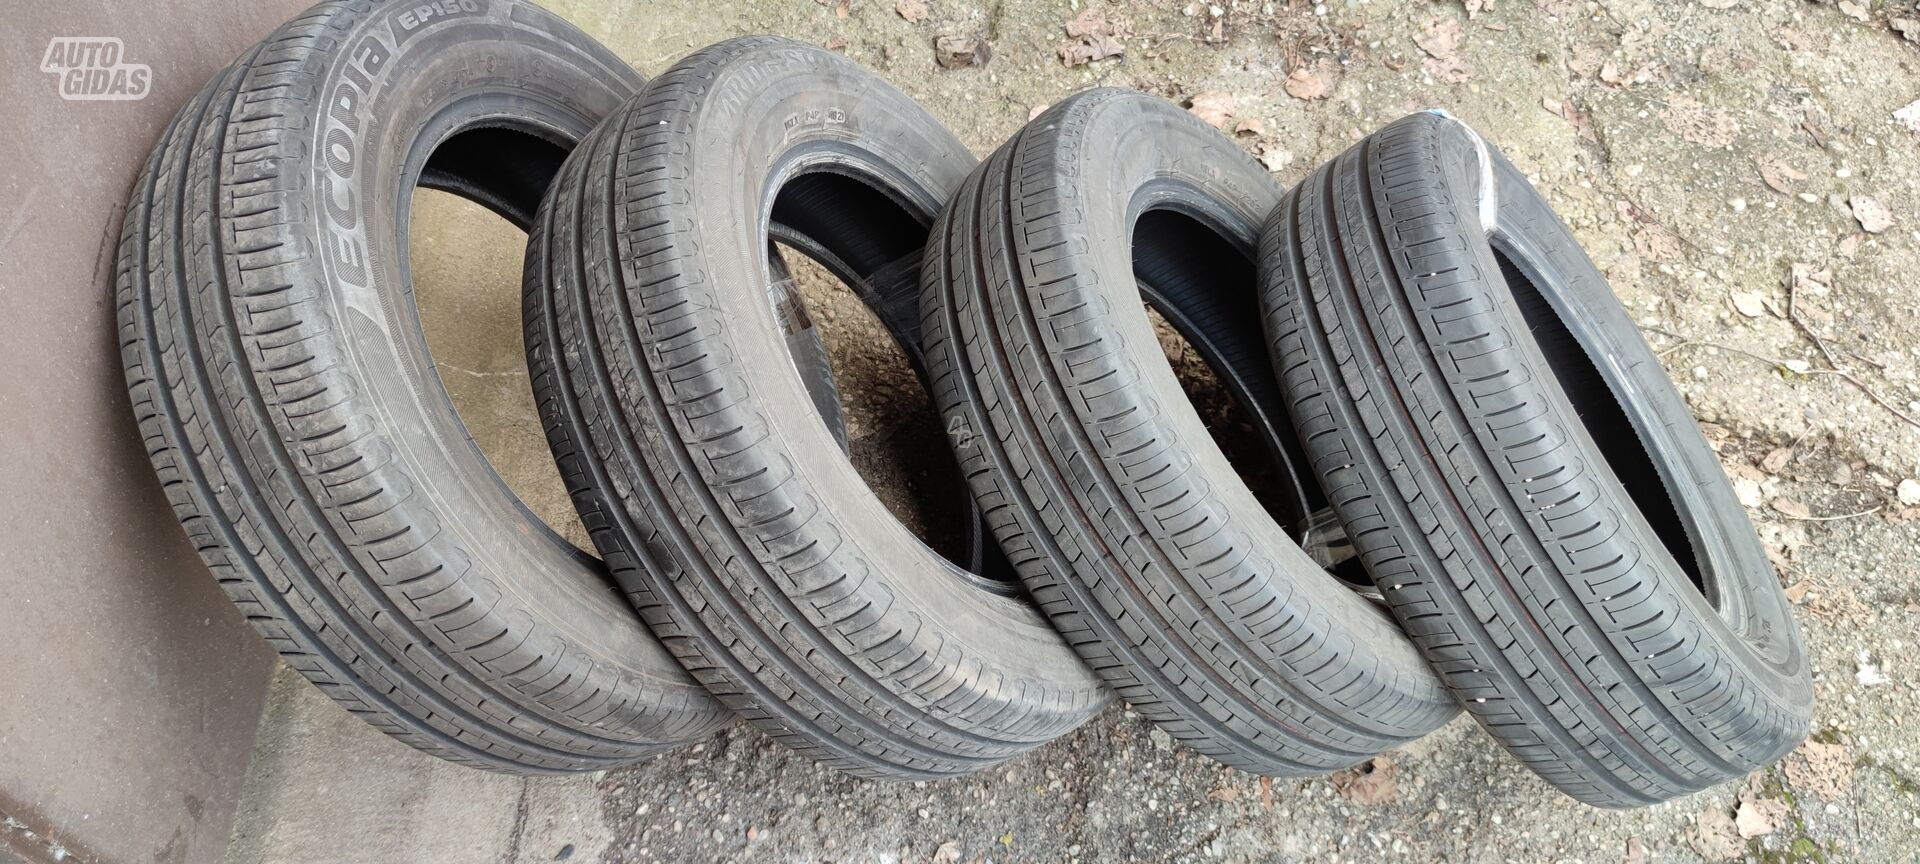 Bridgestone Ecopia ep150 R15 summer tyres passanger car